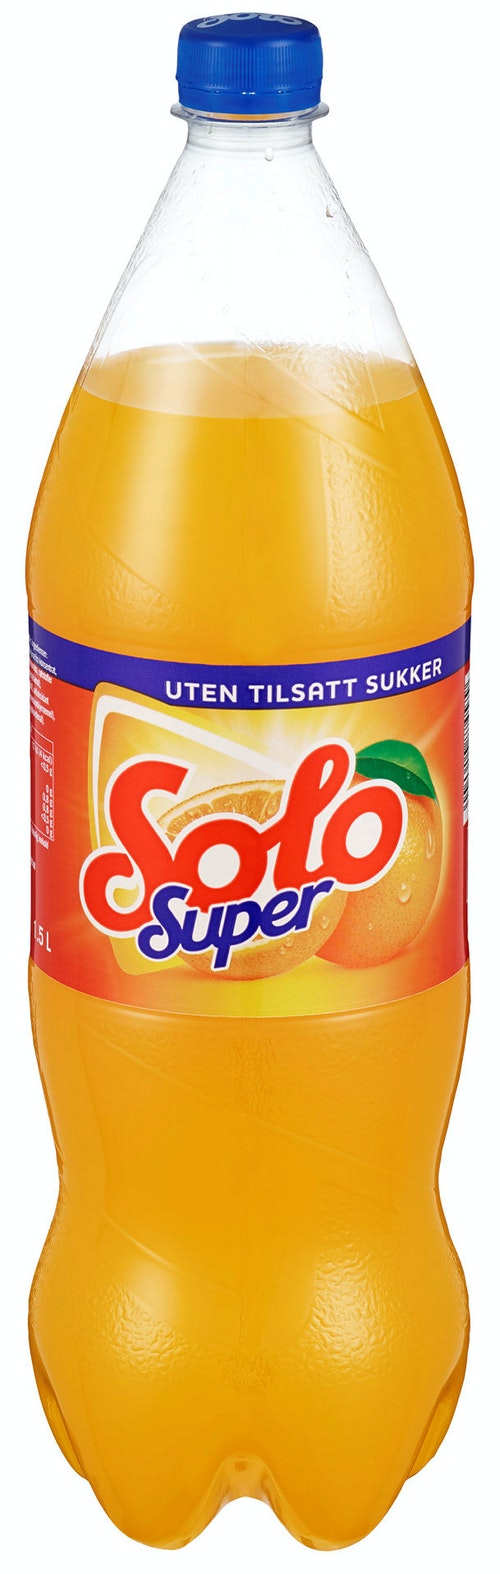 Solo Super 0,5  - Boisson sucrée gazeuse à l’orange, sans sucre